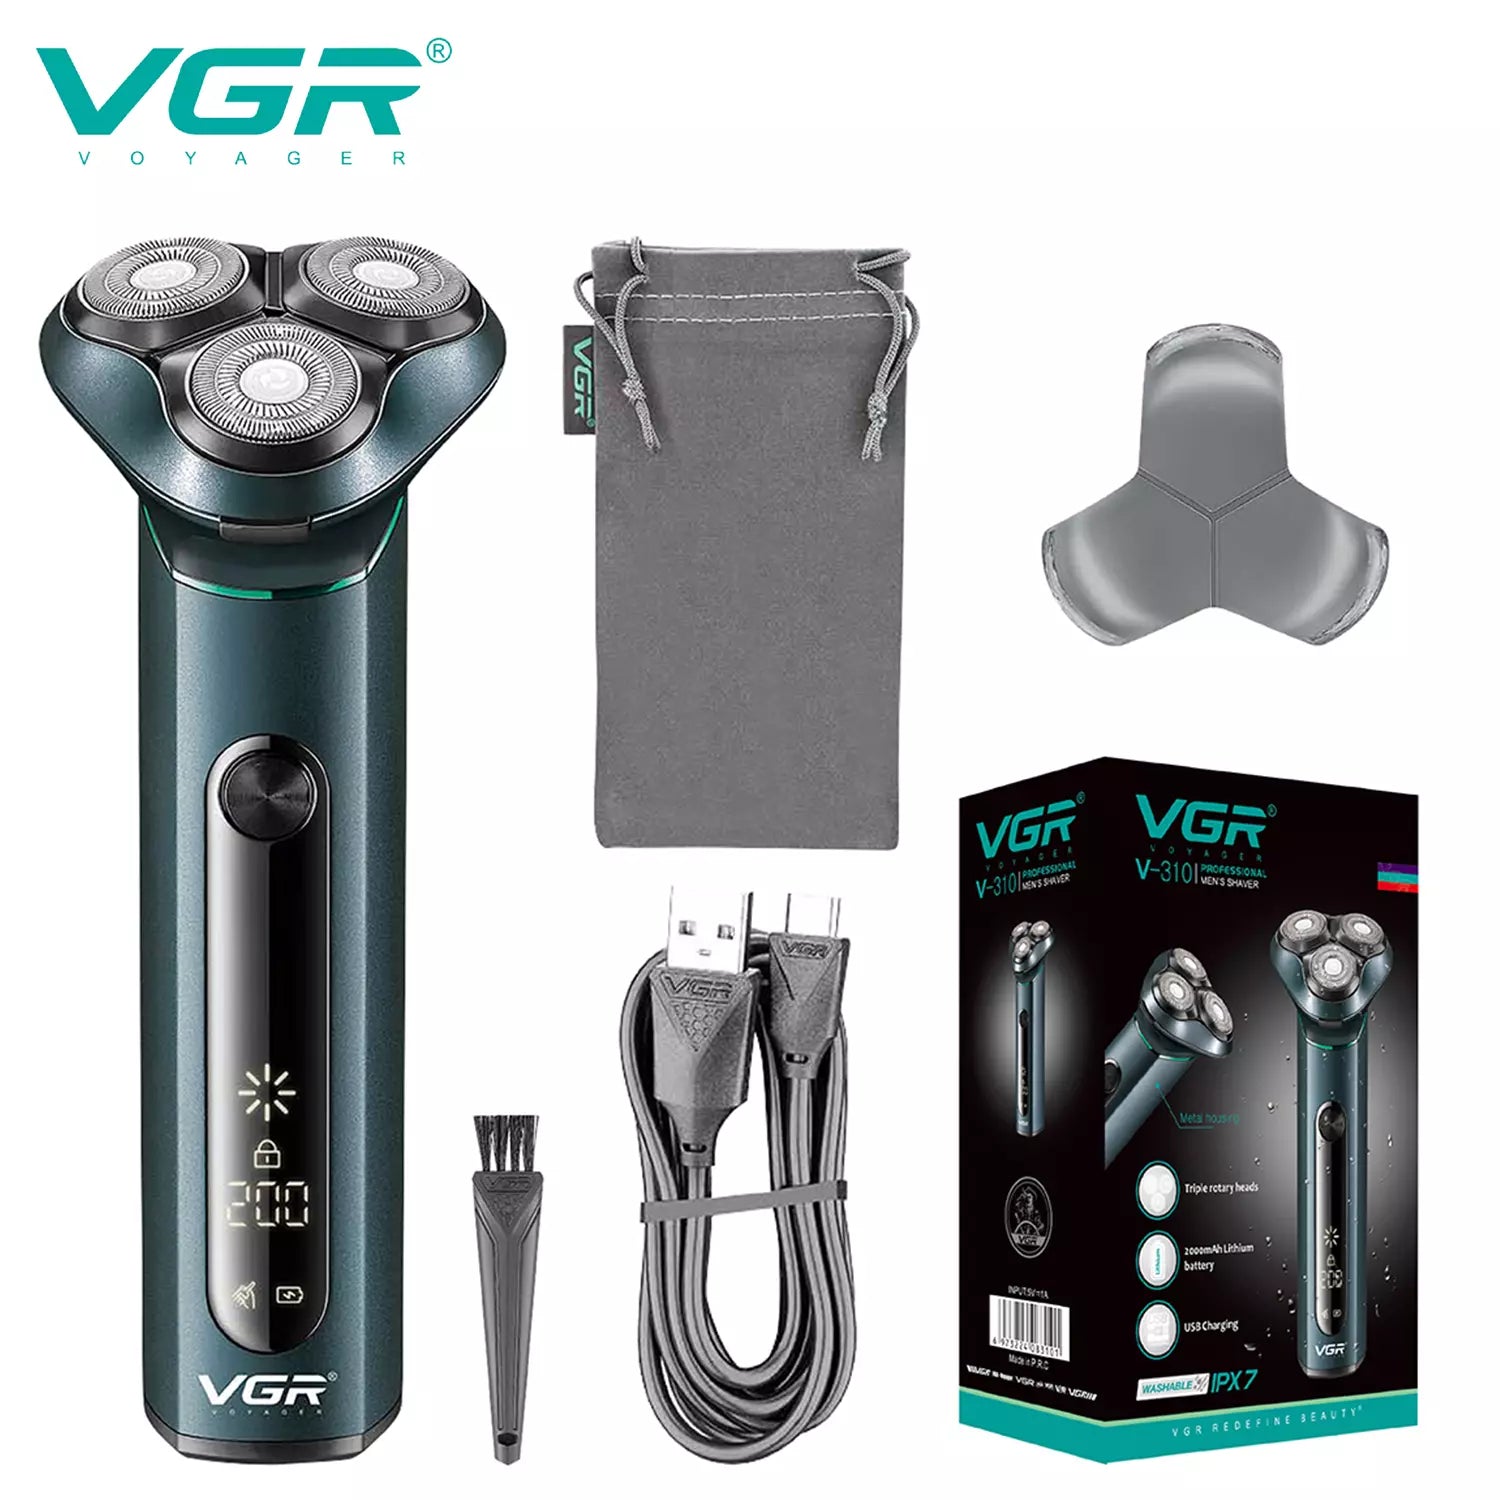 VGR, VGRindia, VGRofficial, VGR V-310